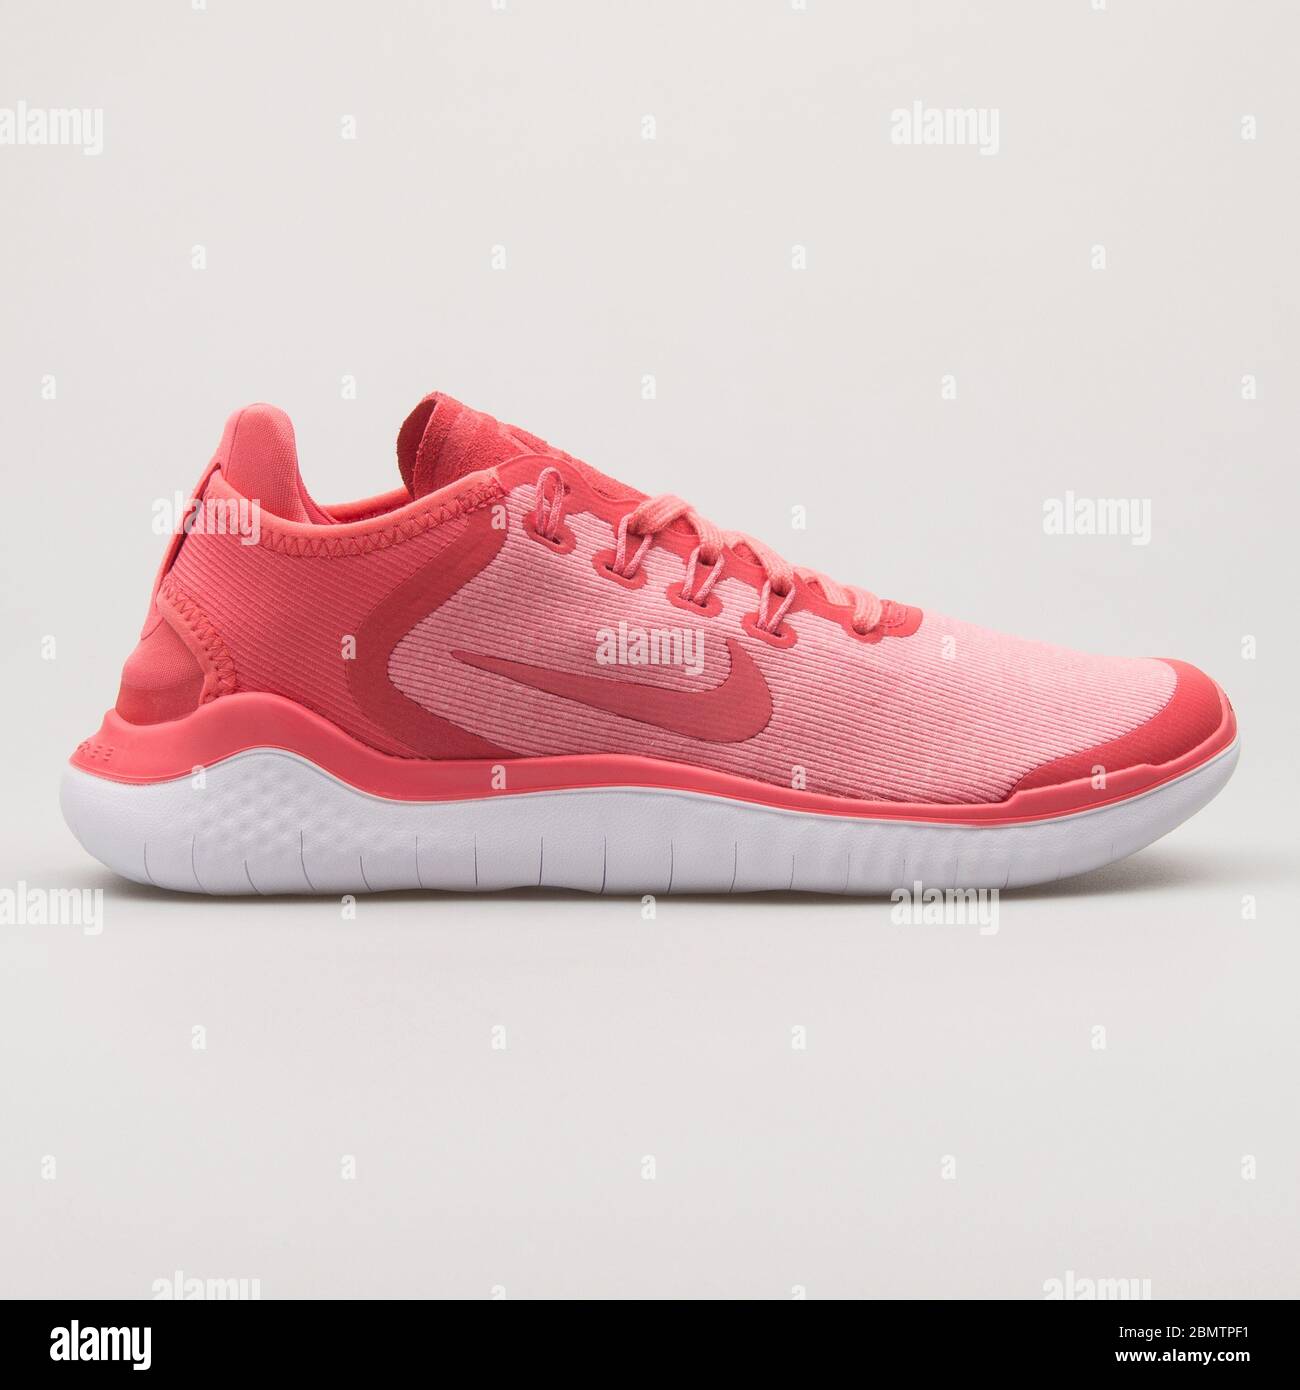 Controversia viceversa Prohibición VIENA, AUSTRIA - 19 DE FEBRERO de 2018: Nike Free RN 2018 SUN, sneakers de  coral, rosadas y blancas sobre fondo blanco Fotografía de stock - Alamy